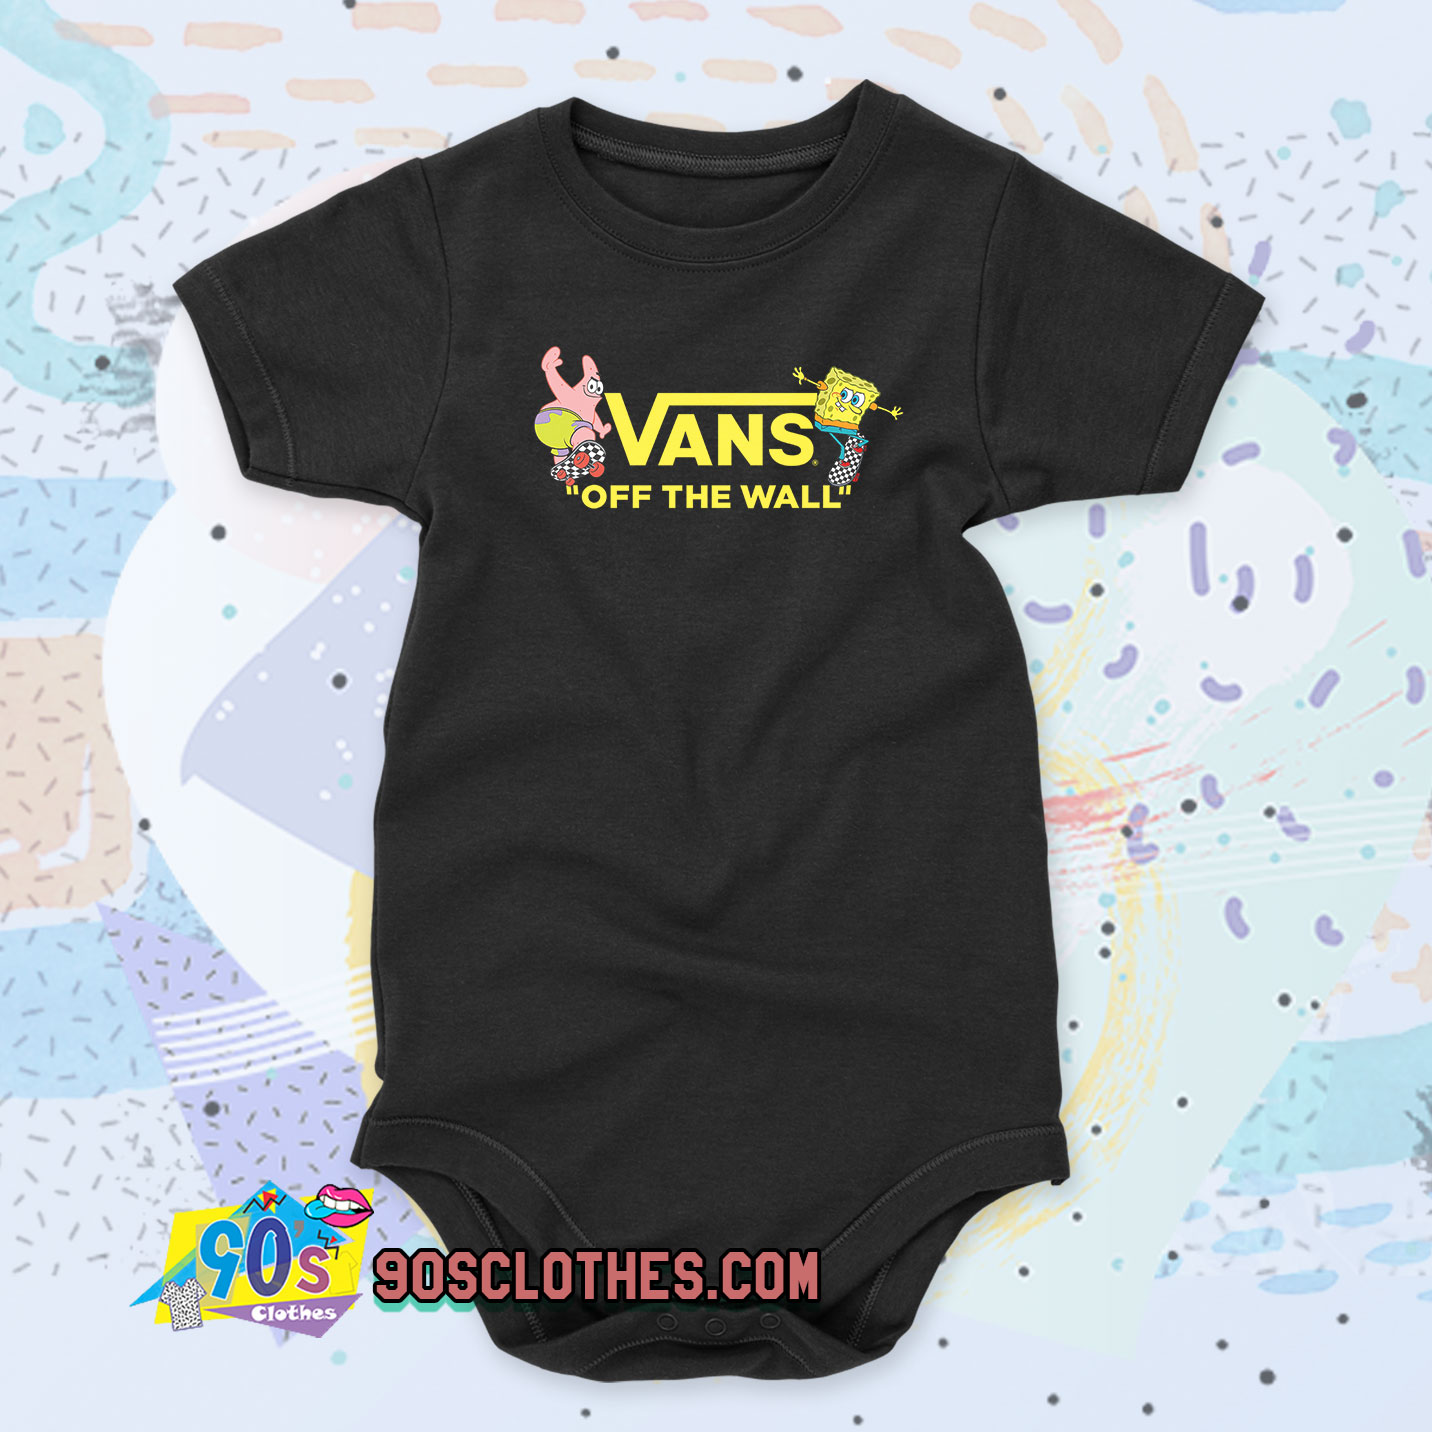 vans baby clothes uk